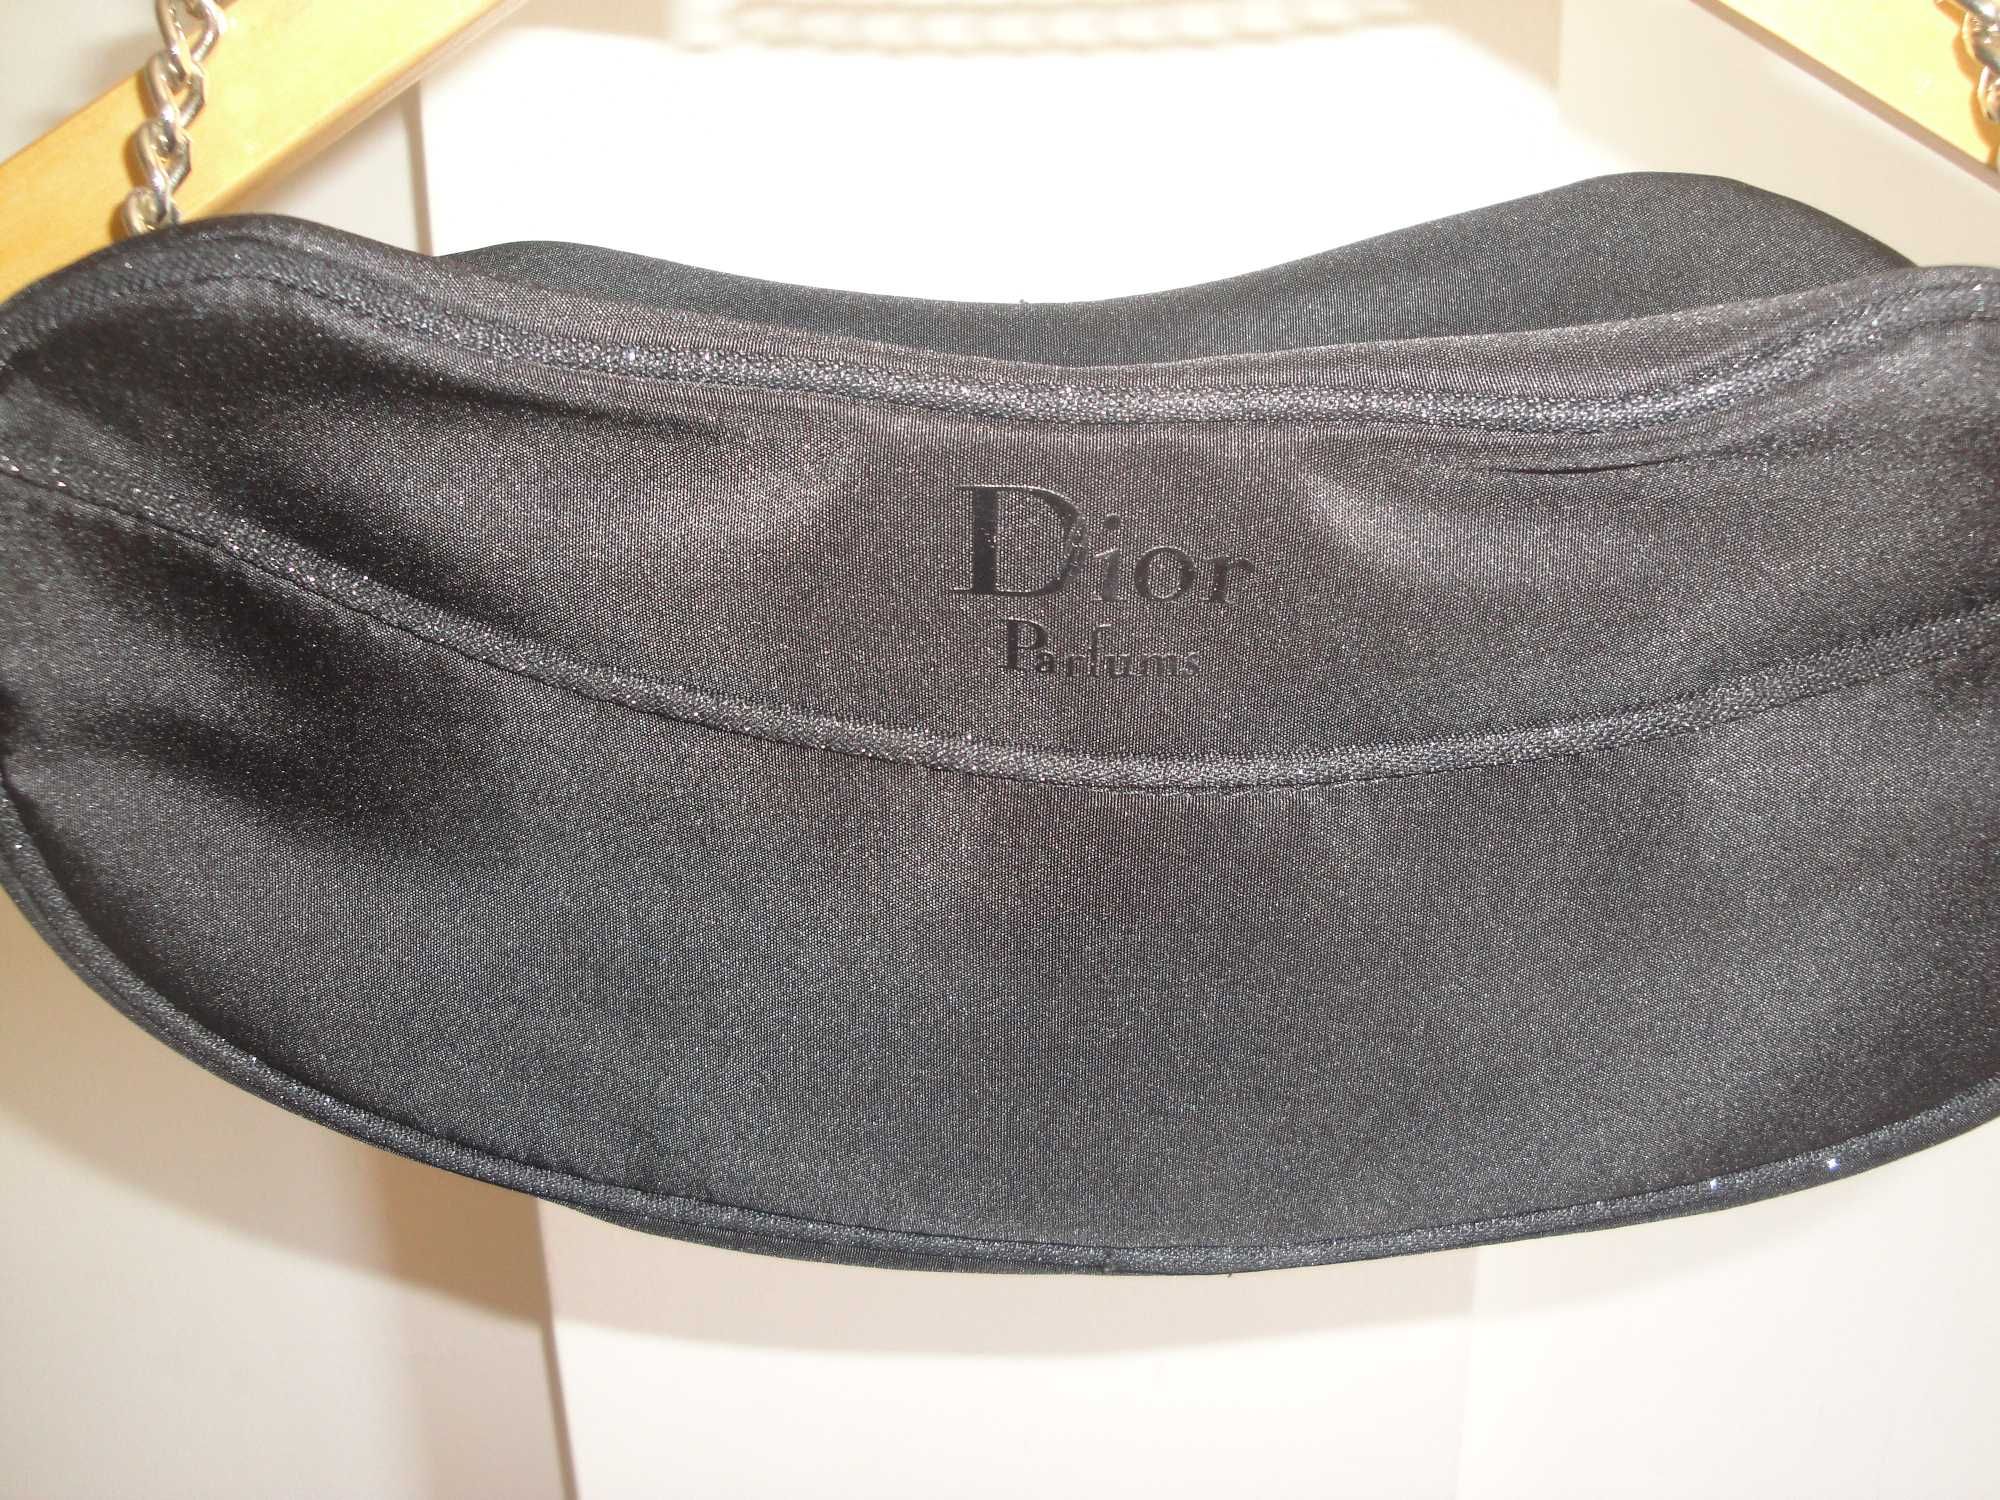 Нова вечерна / официална черна дамска чантичка Dior, Диор, чанта, клъч